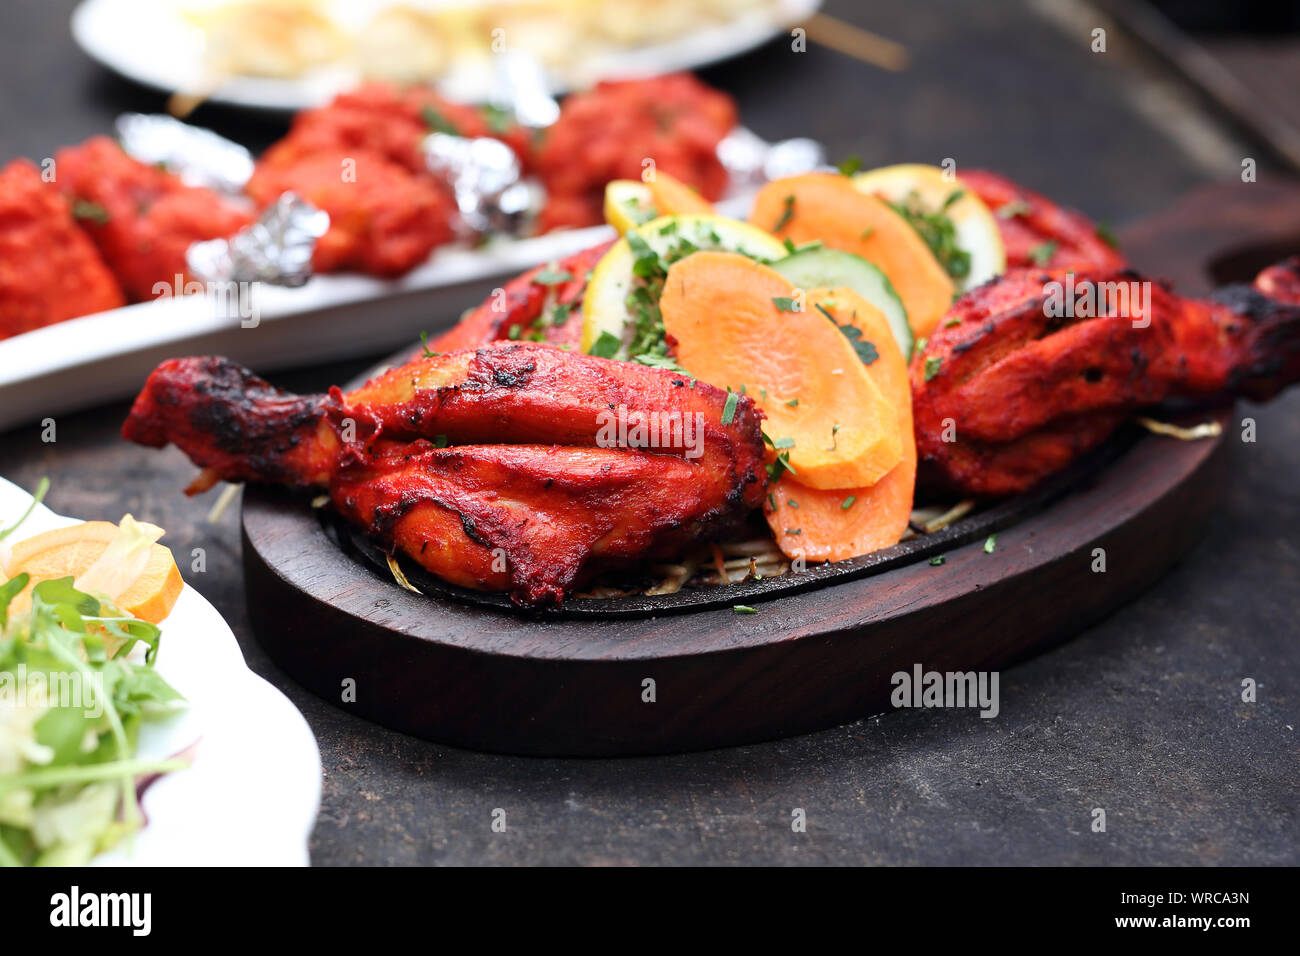 La cuisine indienne. Des plats traditionnels indiens. Cuisine orientale Banque D'Images